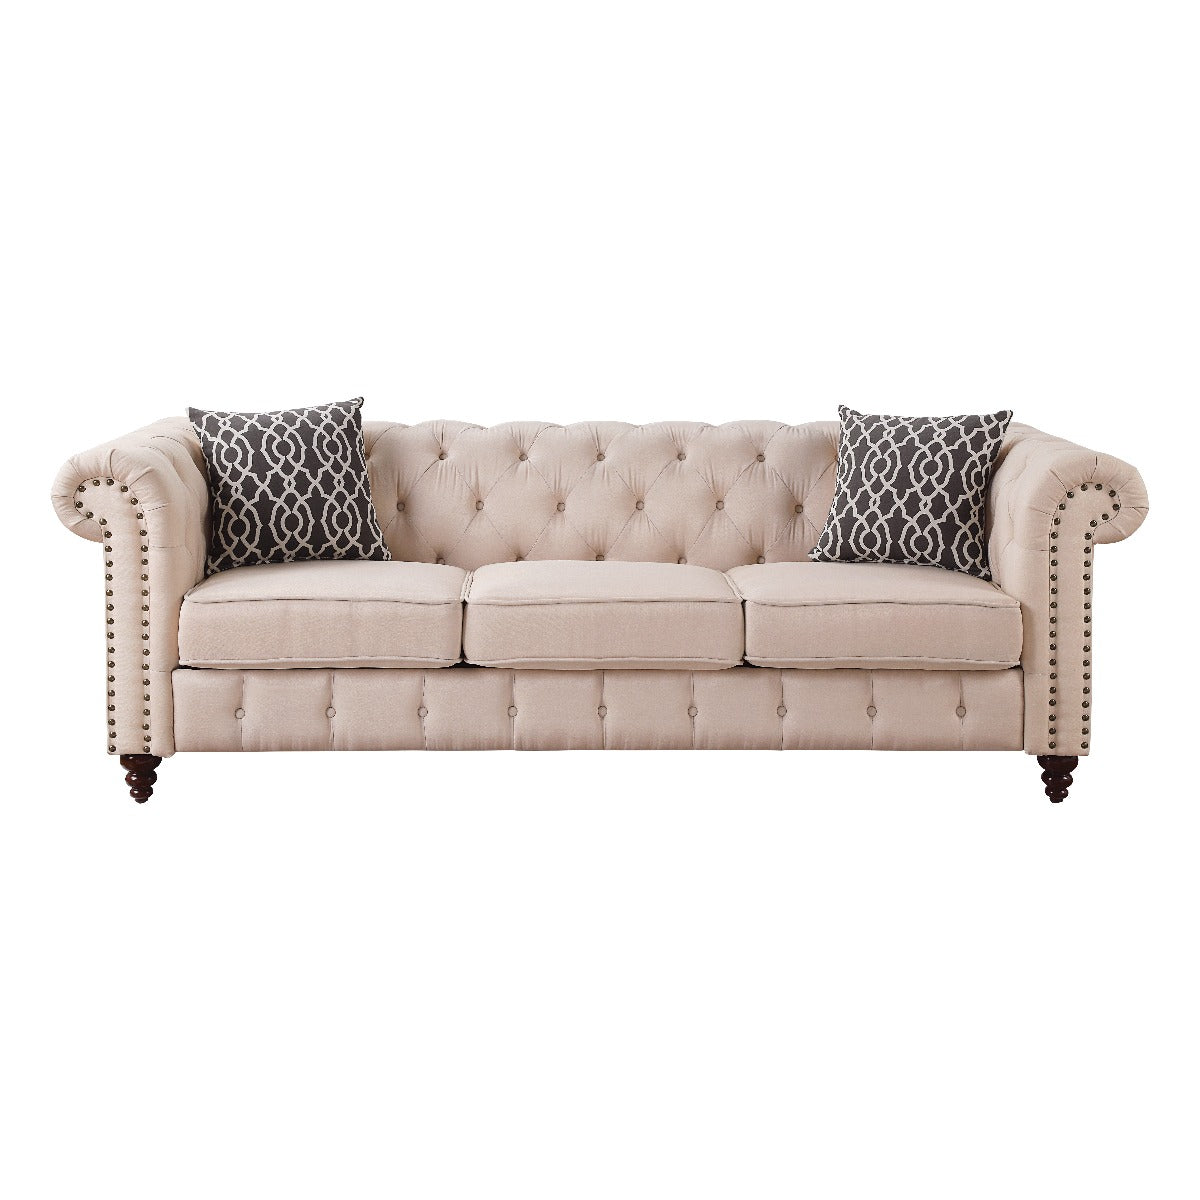 ACME Furniture TV & Media Units - Aurelia Sofa w/2 Pillows, Beige Linen